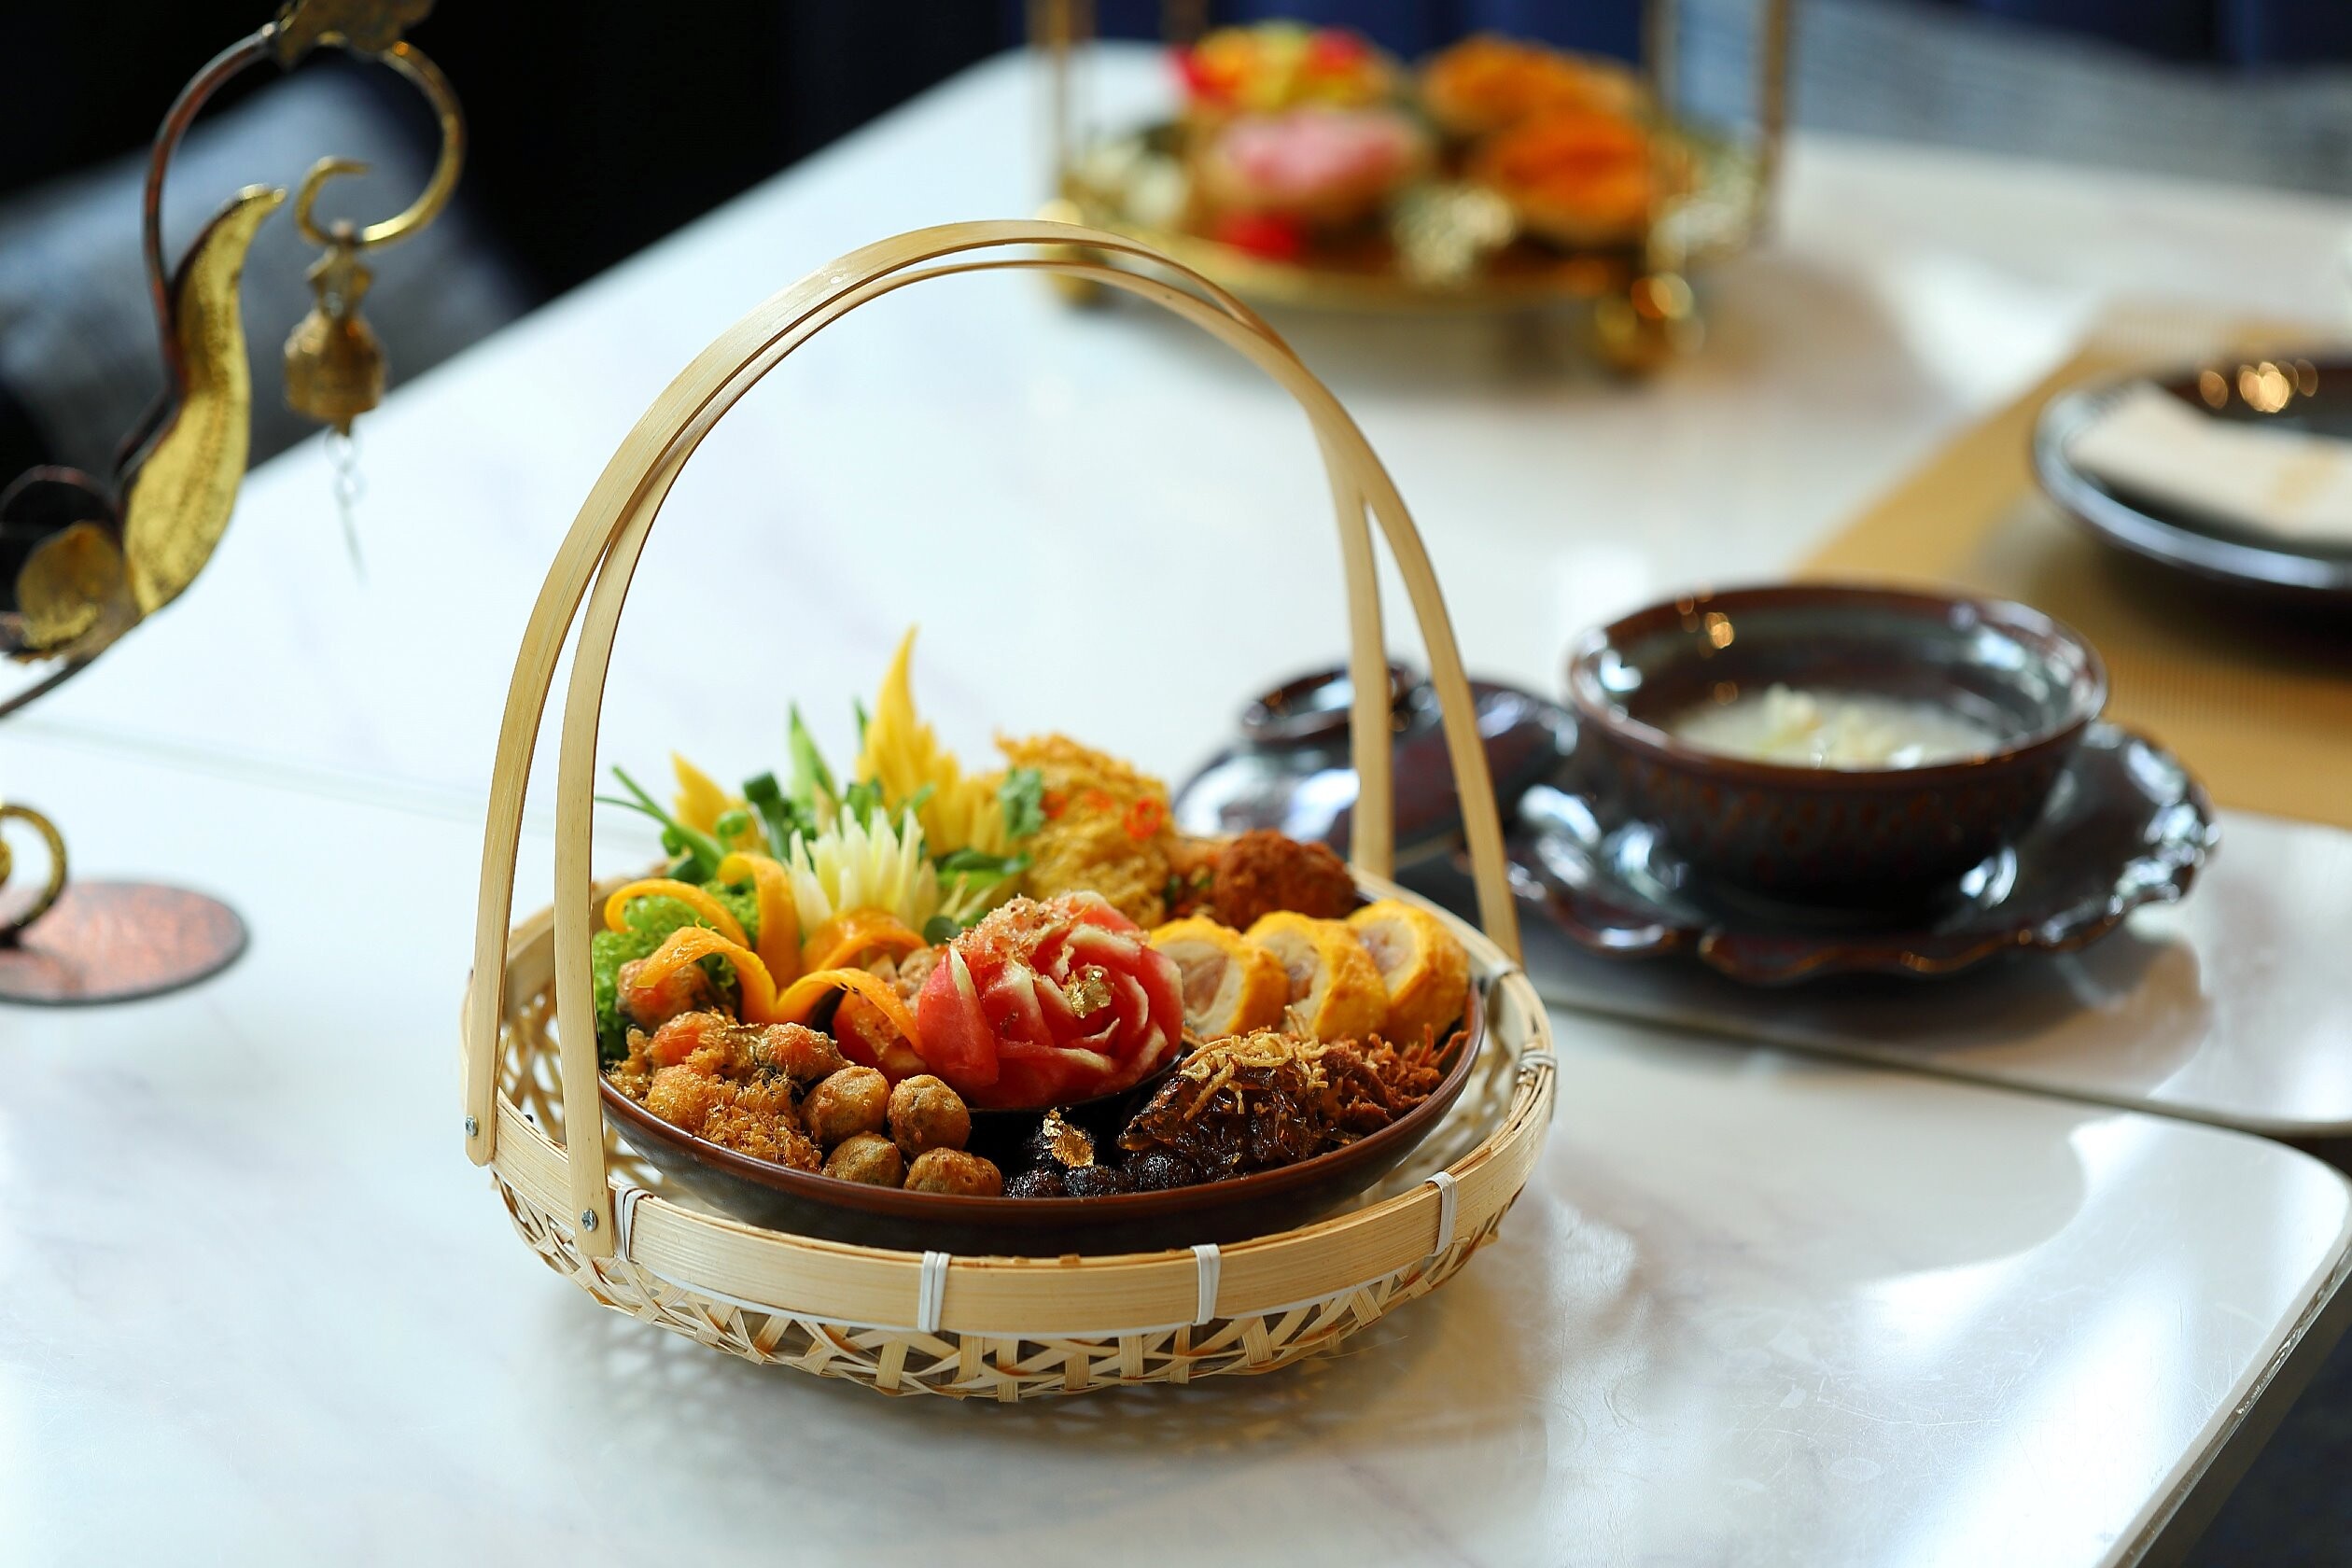 ร้านอาหารไทย "ทองหล่อ" ชวนอร่อยกับเมนูต้อนรับหน้าร้อน "ข้าวแช่ตำรับทองหล่อ" ค้นพบประสบการณ์ความอร่อยระดับตำนาน